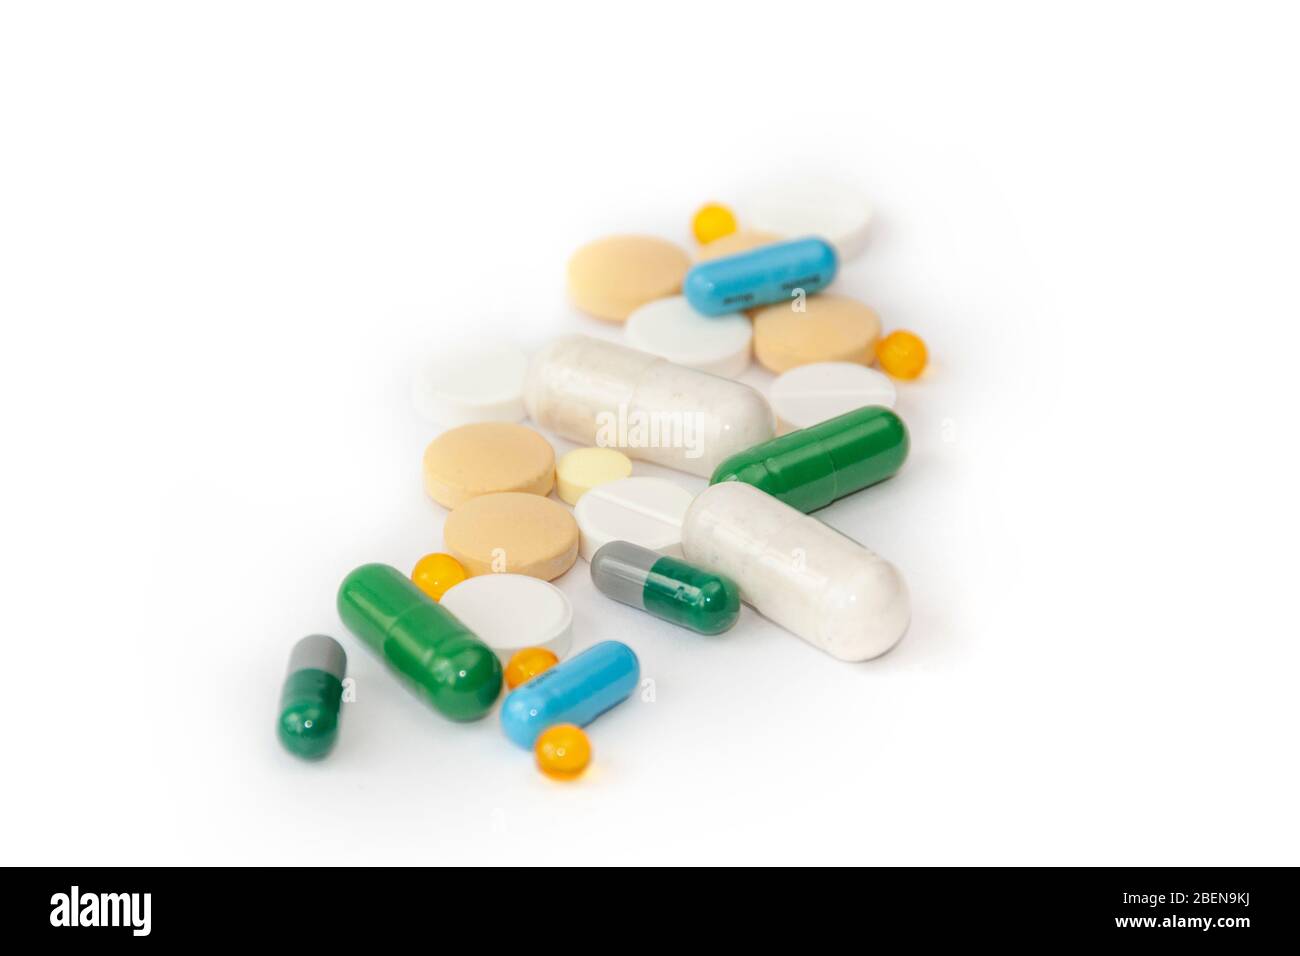 Tas de divers médicaments pilules sur fond blanc. Forte demande de médicaments pour le traitement du coronavirus Banque D'Images